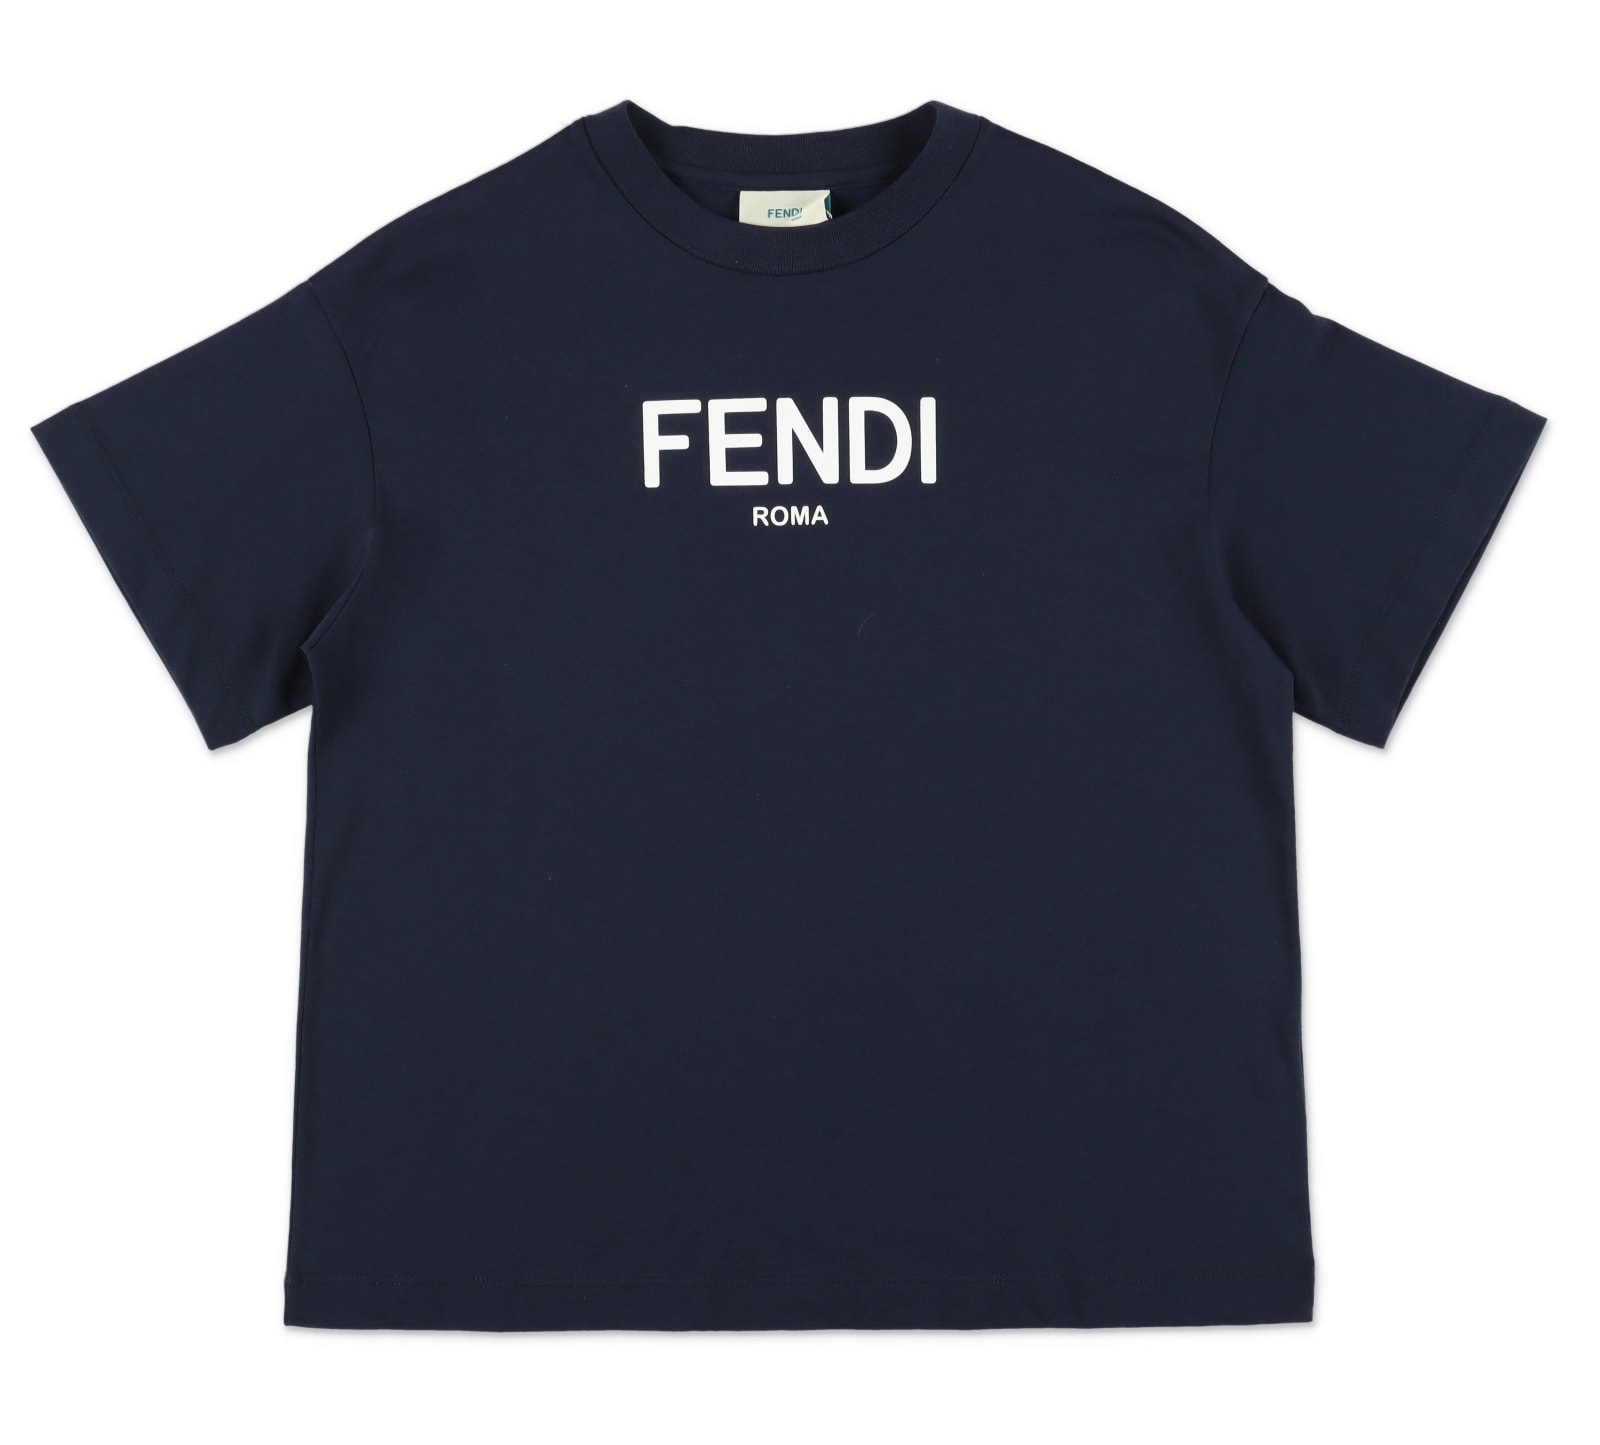 Fendi T-shirt Blu Navy In Jersey Di Cotone Bambino